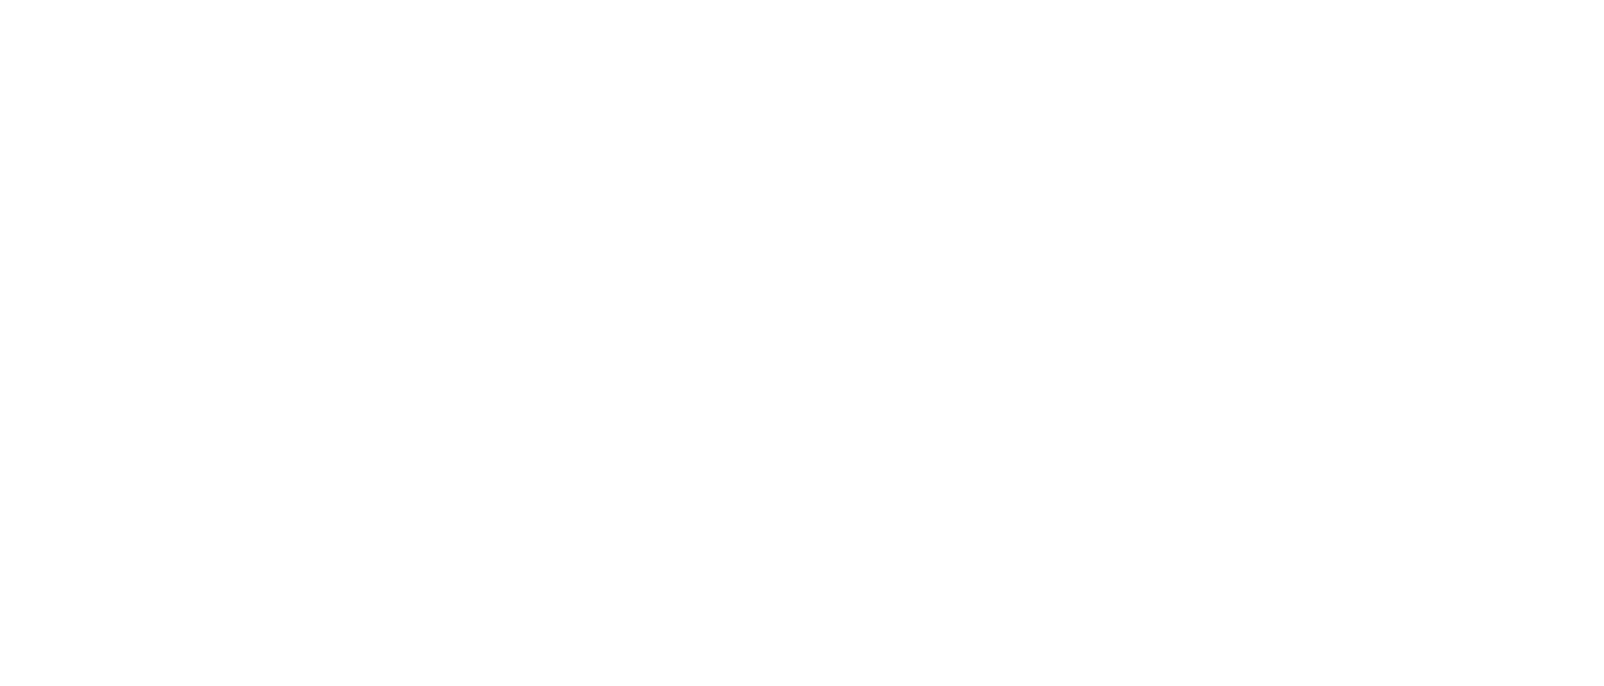 EaseMyTrip logo large for dark backgrounds (transparent PNG)